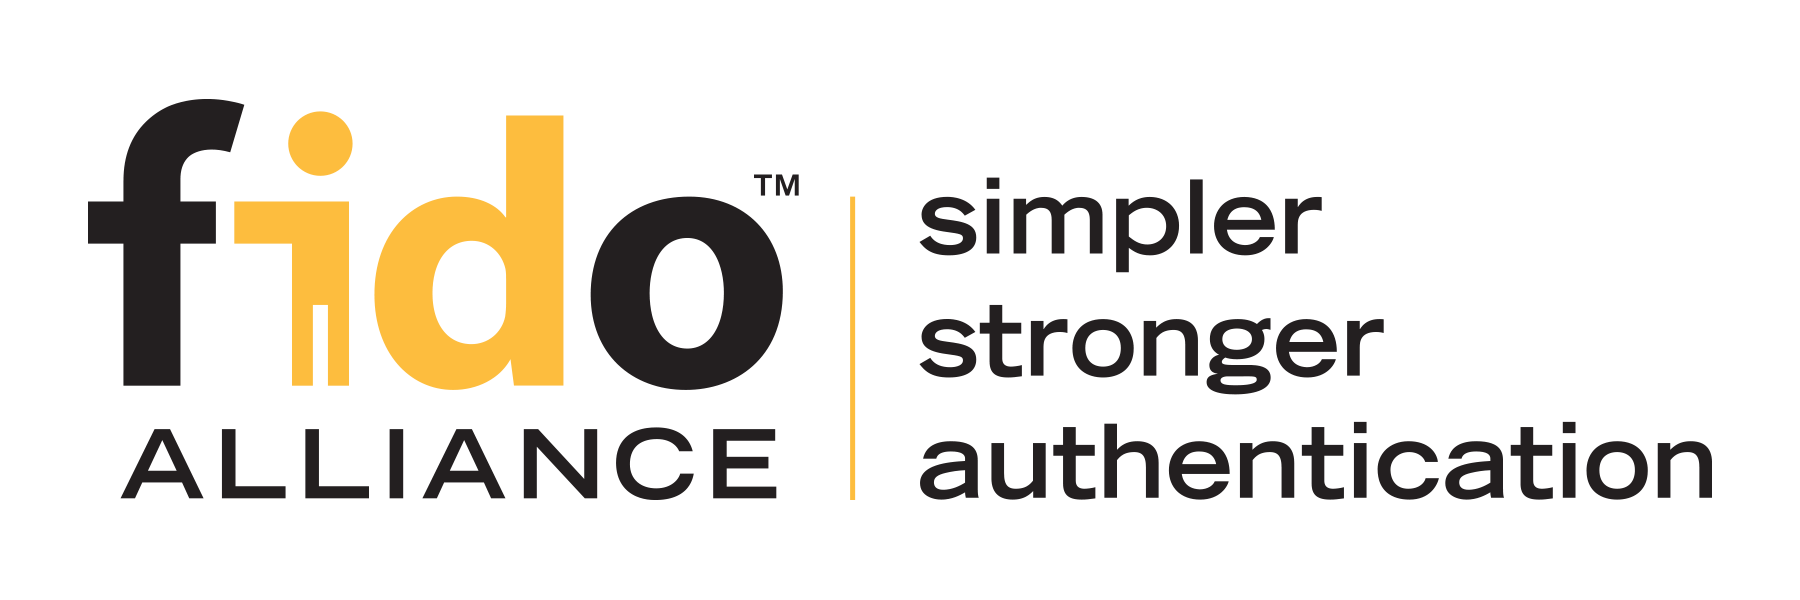 Alliance Logo - Logo Usage & Style Guide